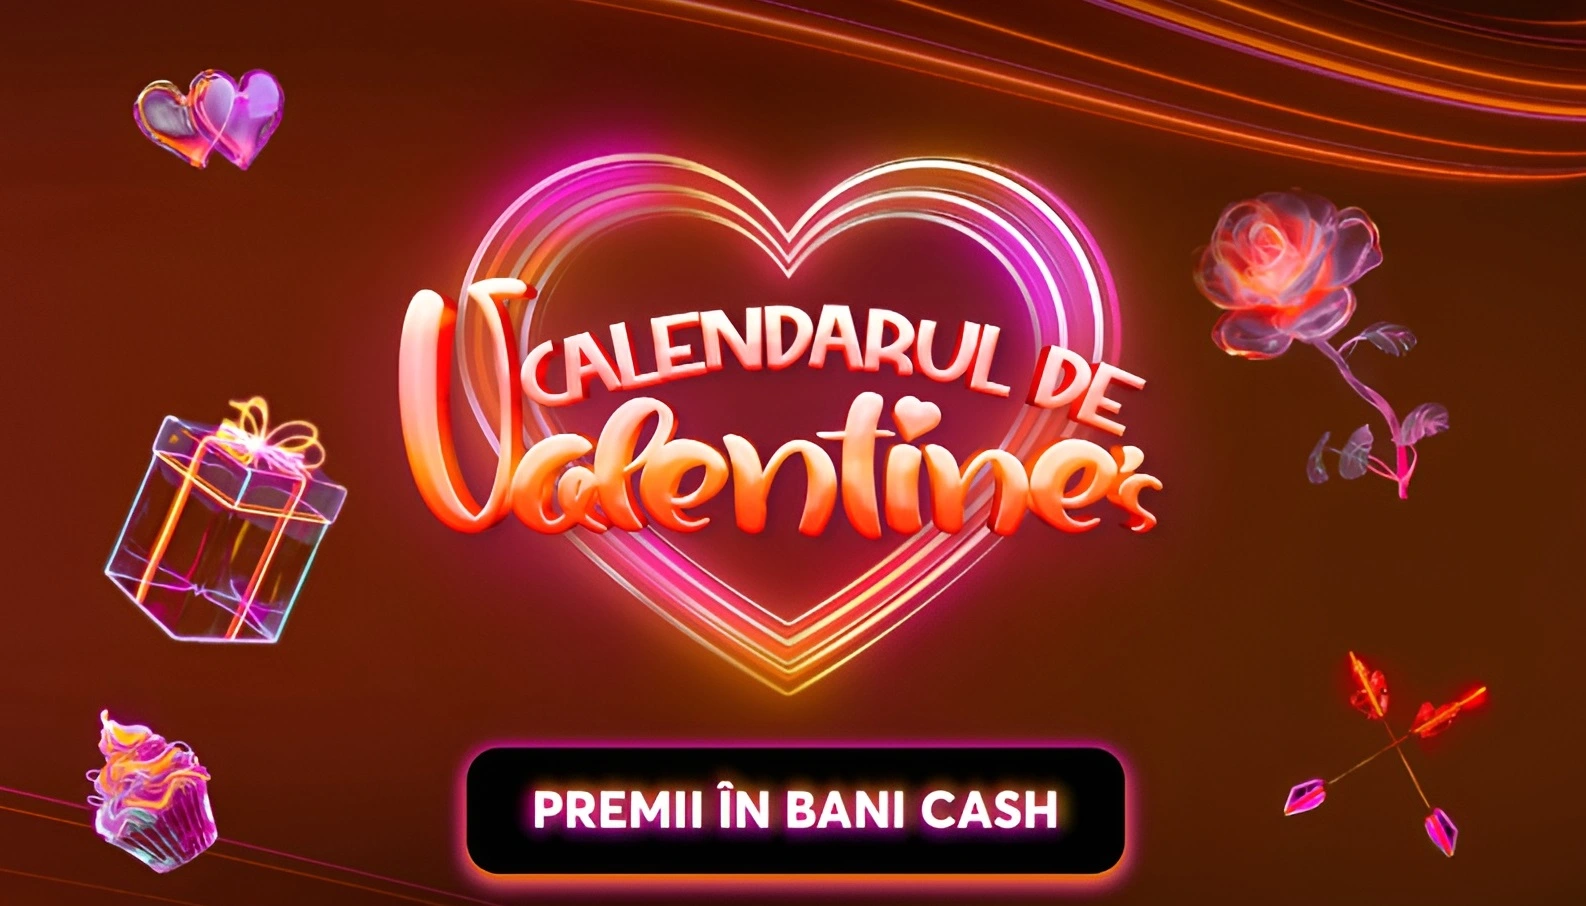 Calendarul de Valentine's Betano - premii de 100.000 RON